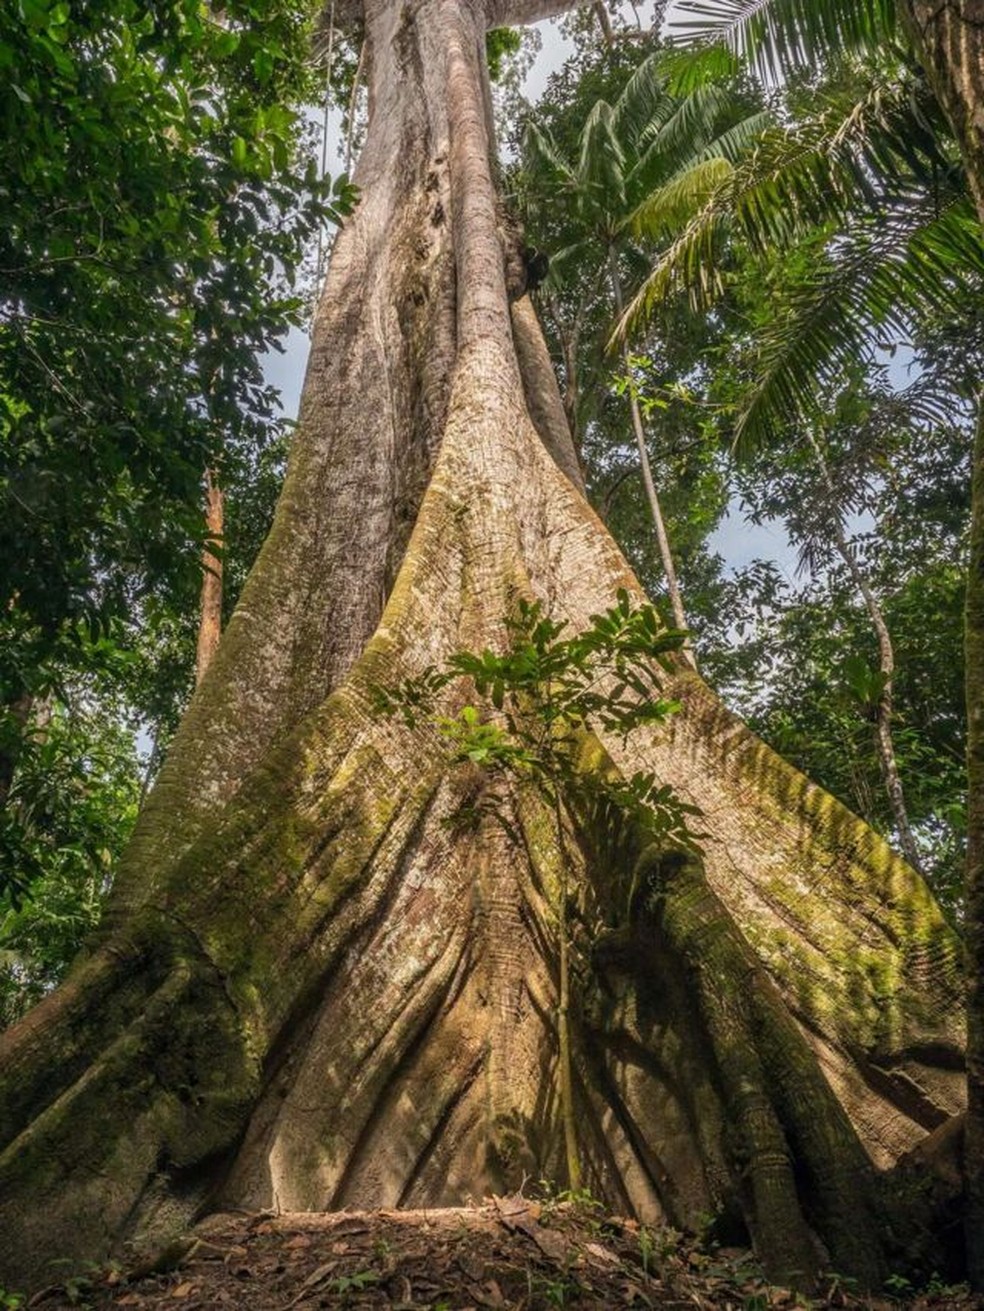 Quanto mais antiga a árvore, maior a quantidade de carbono armazenada — Foto: Getty Images via BBC